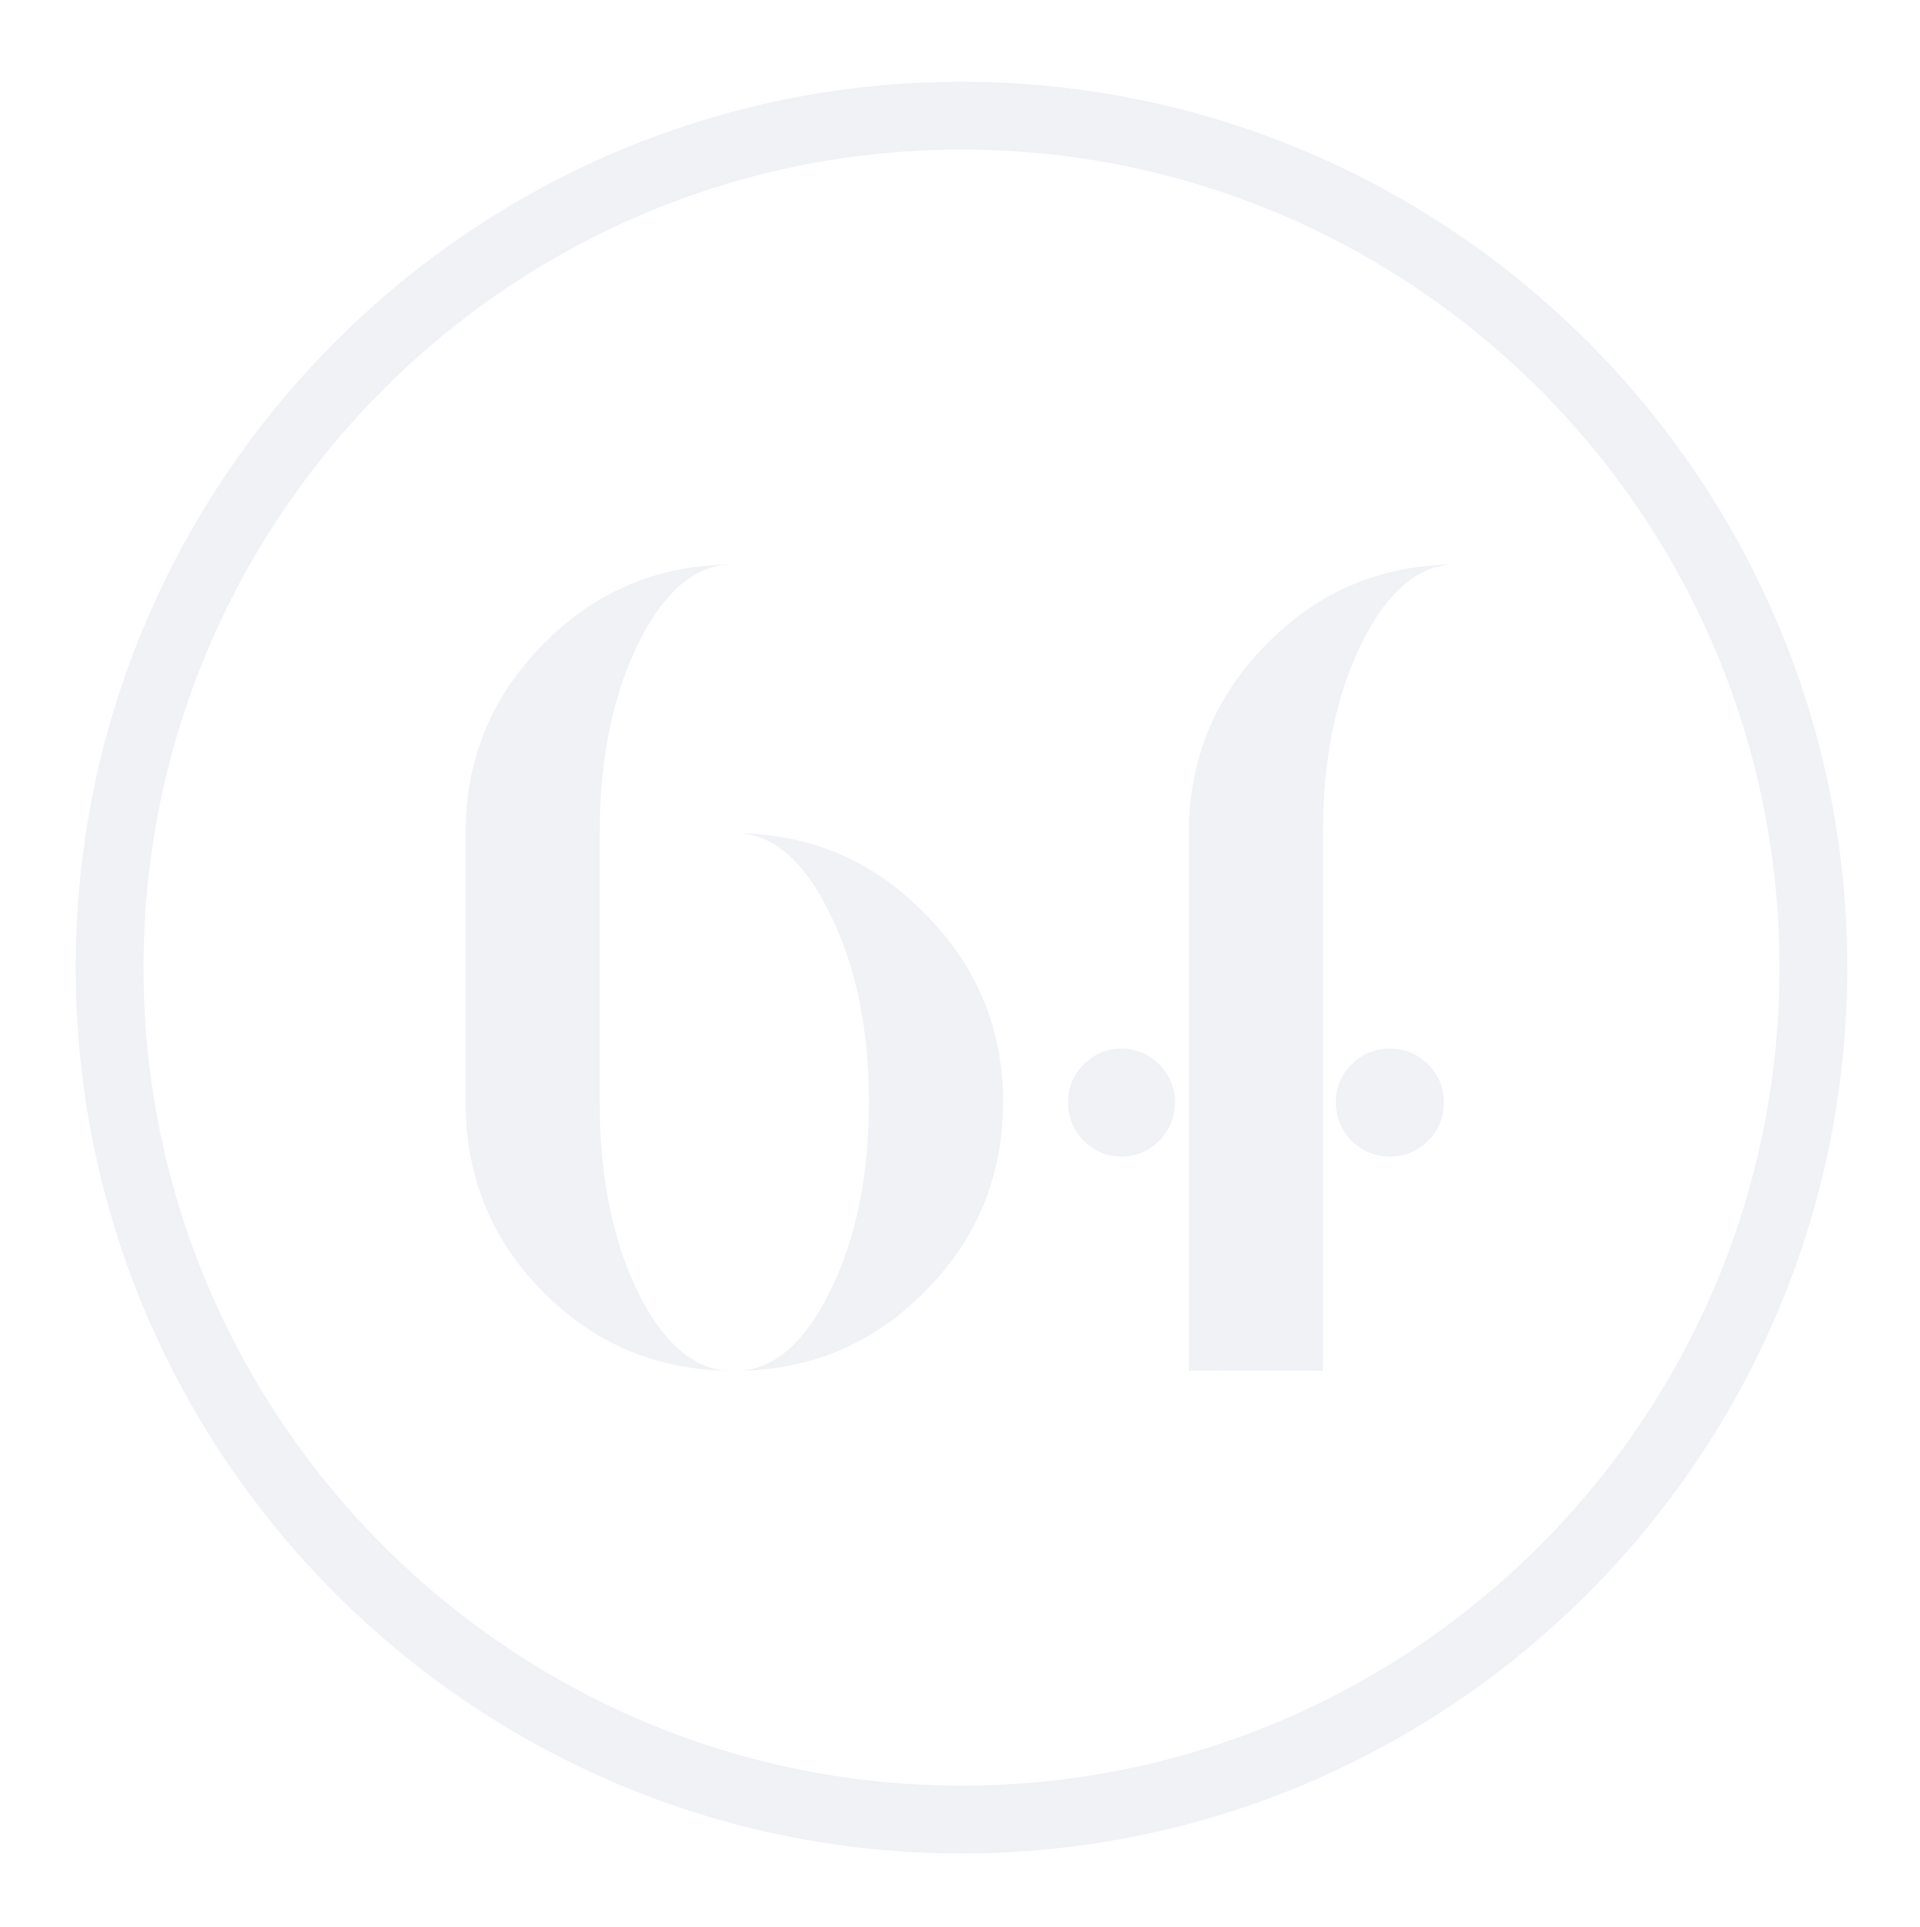 Un cercle blanc avec la lettre f à l'intérieur sur un fond blanc.